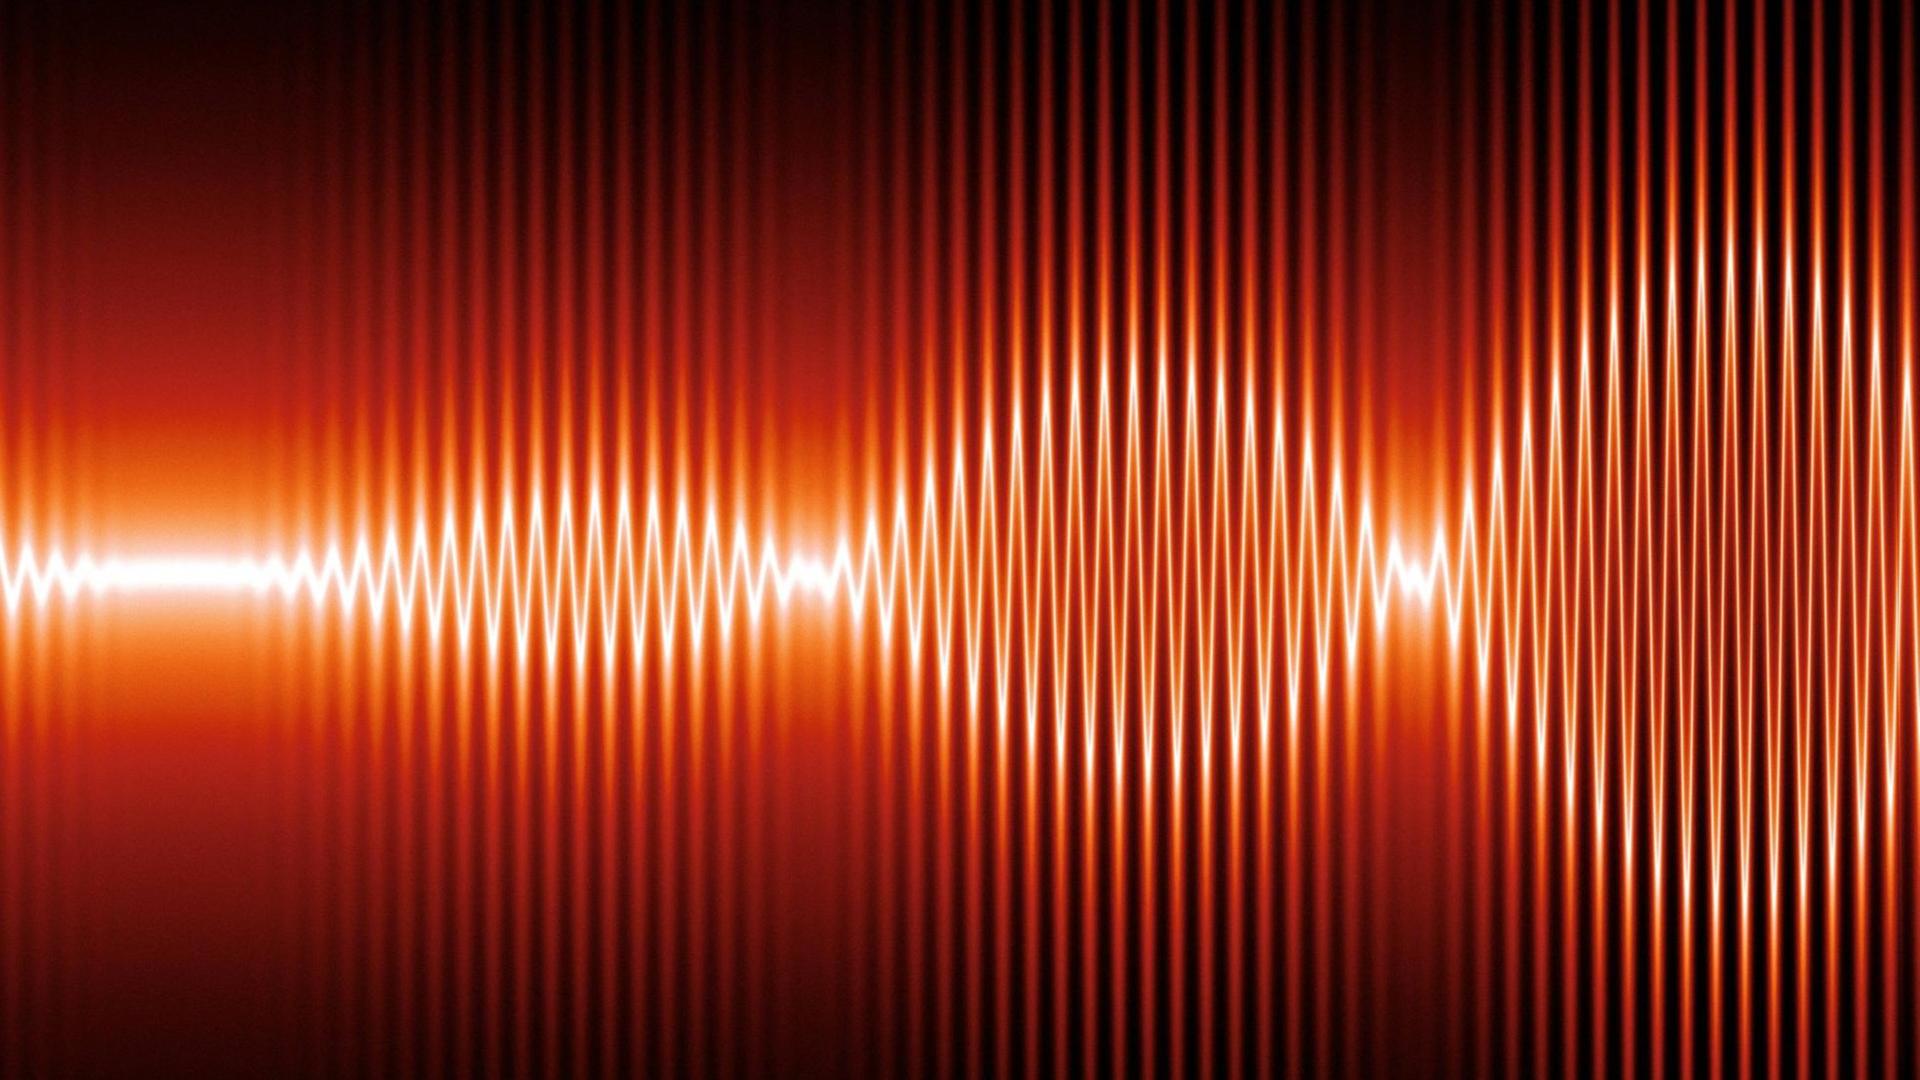 Computergrafik von Soundwellen.